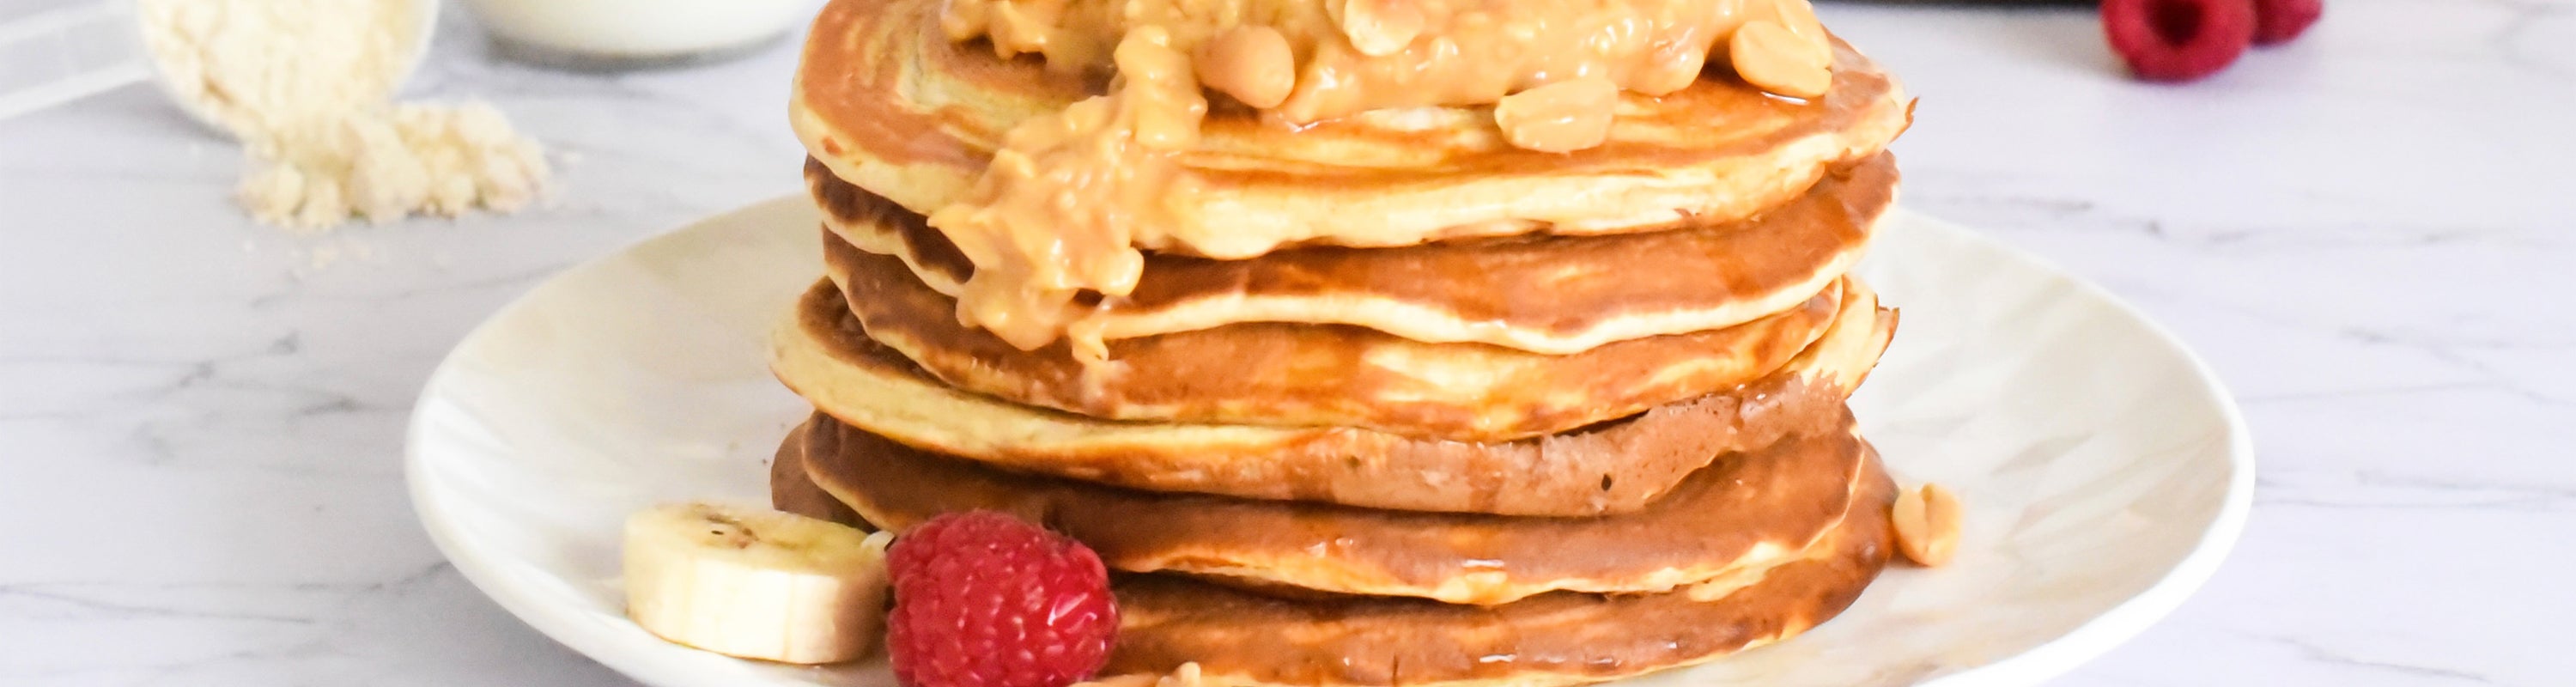 Pancakes hyperprotéinés flocons d'avoine - Recette sèche musculation